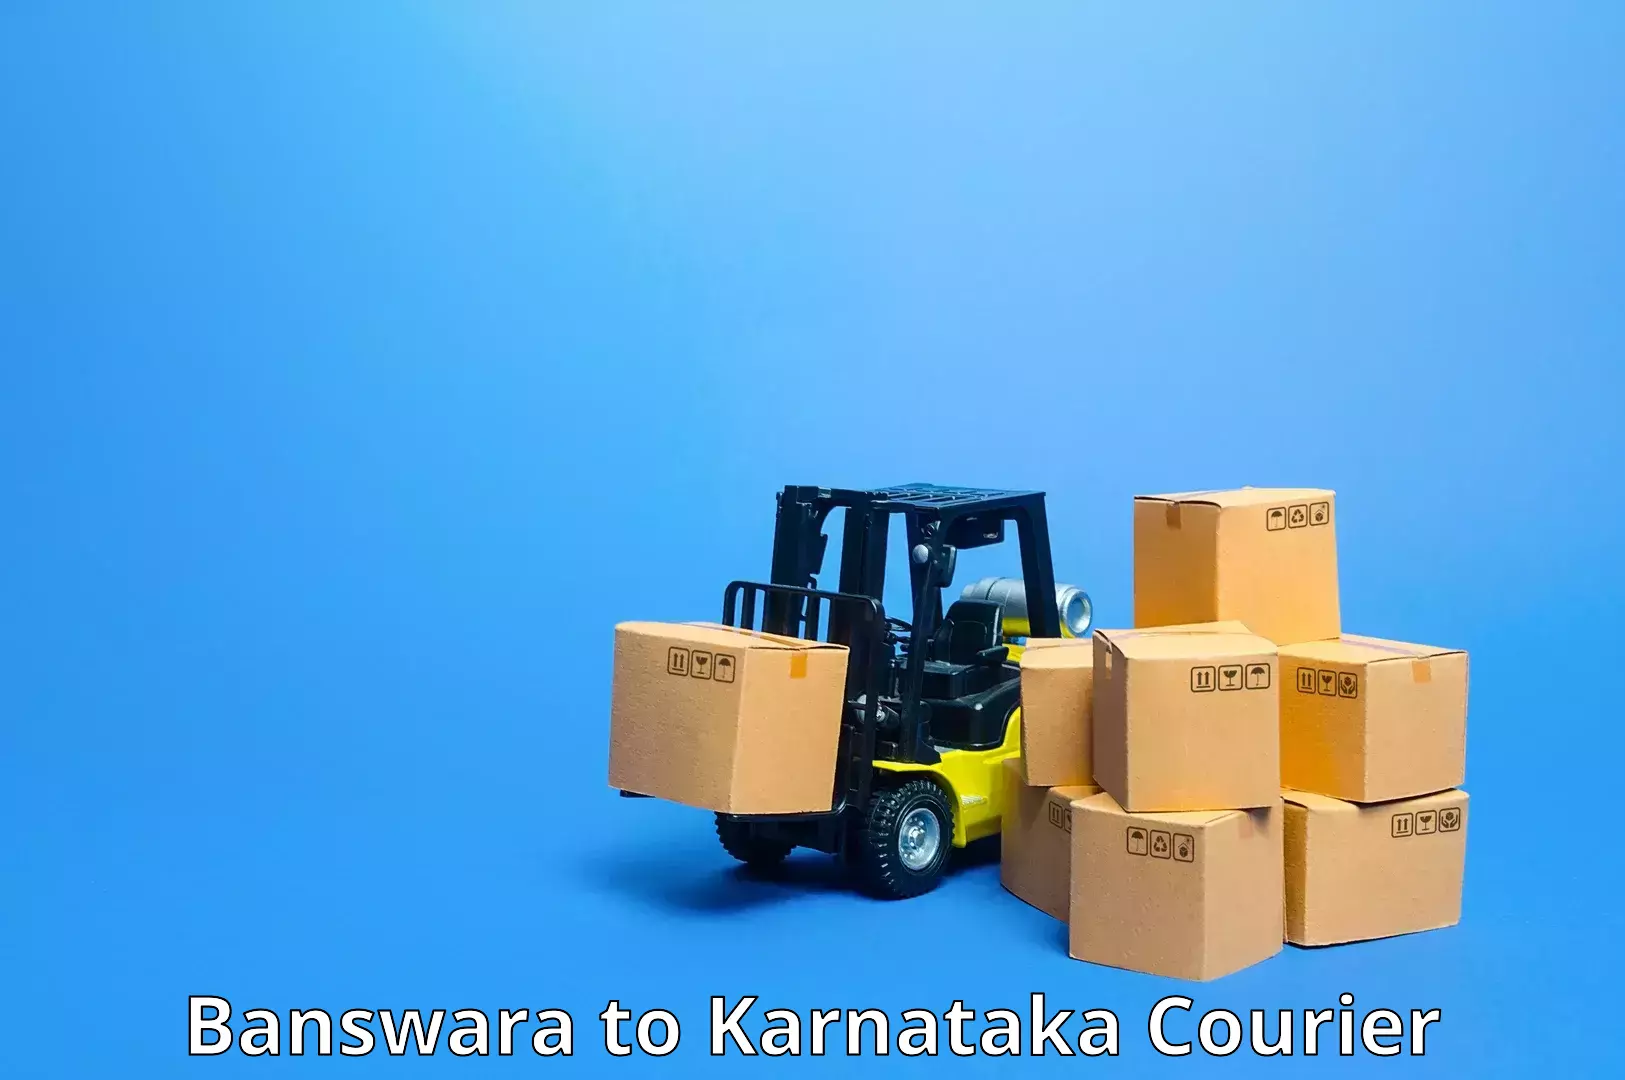 Subscription-based courier Banswara to Karnataka